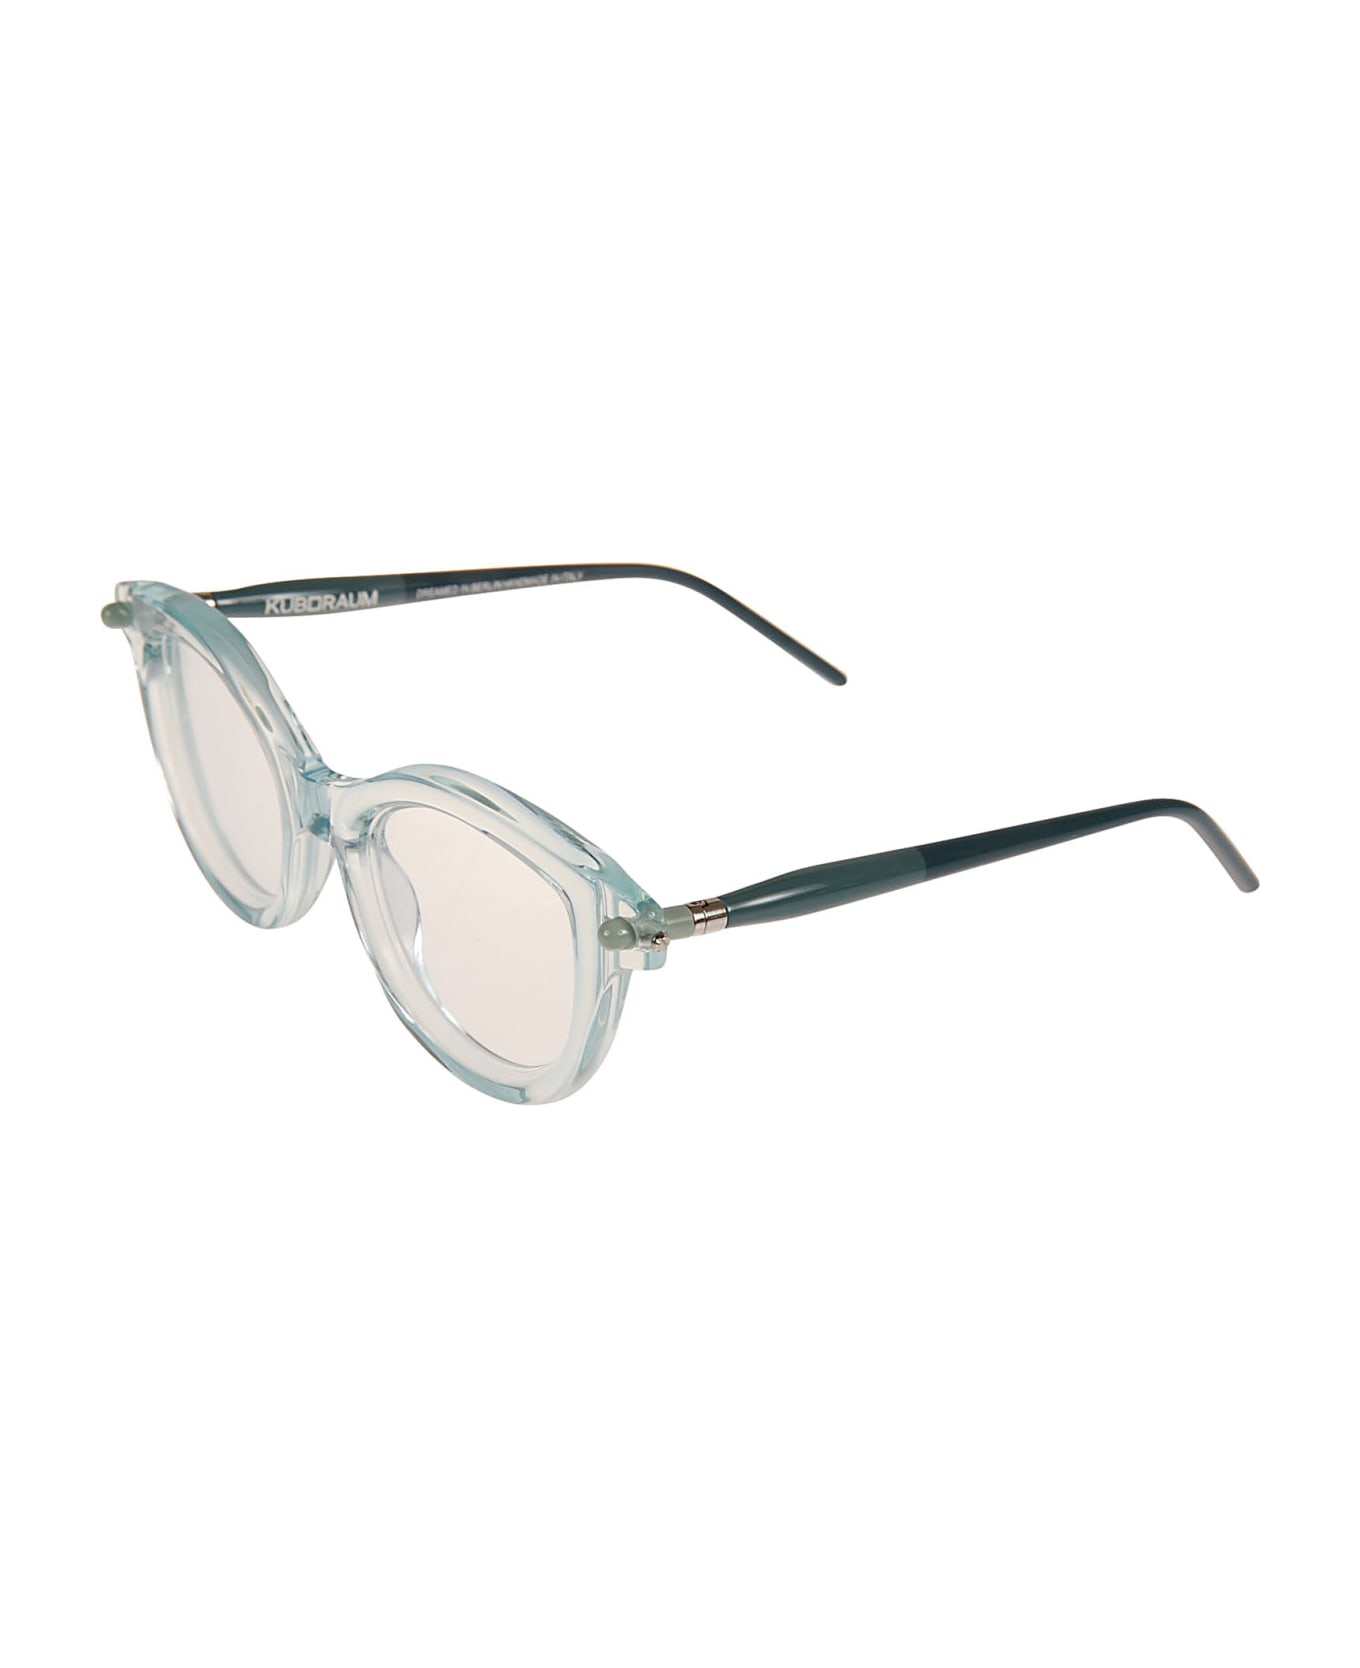 Kuboraum P7 Glasses - Green アイウェア